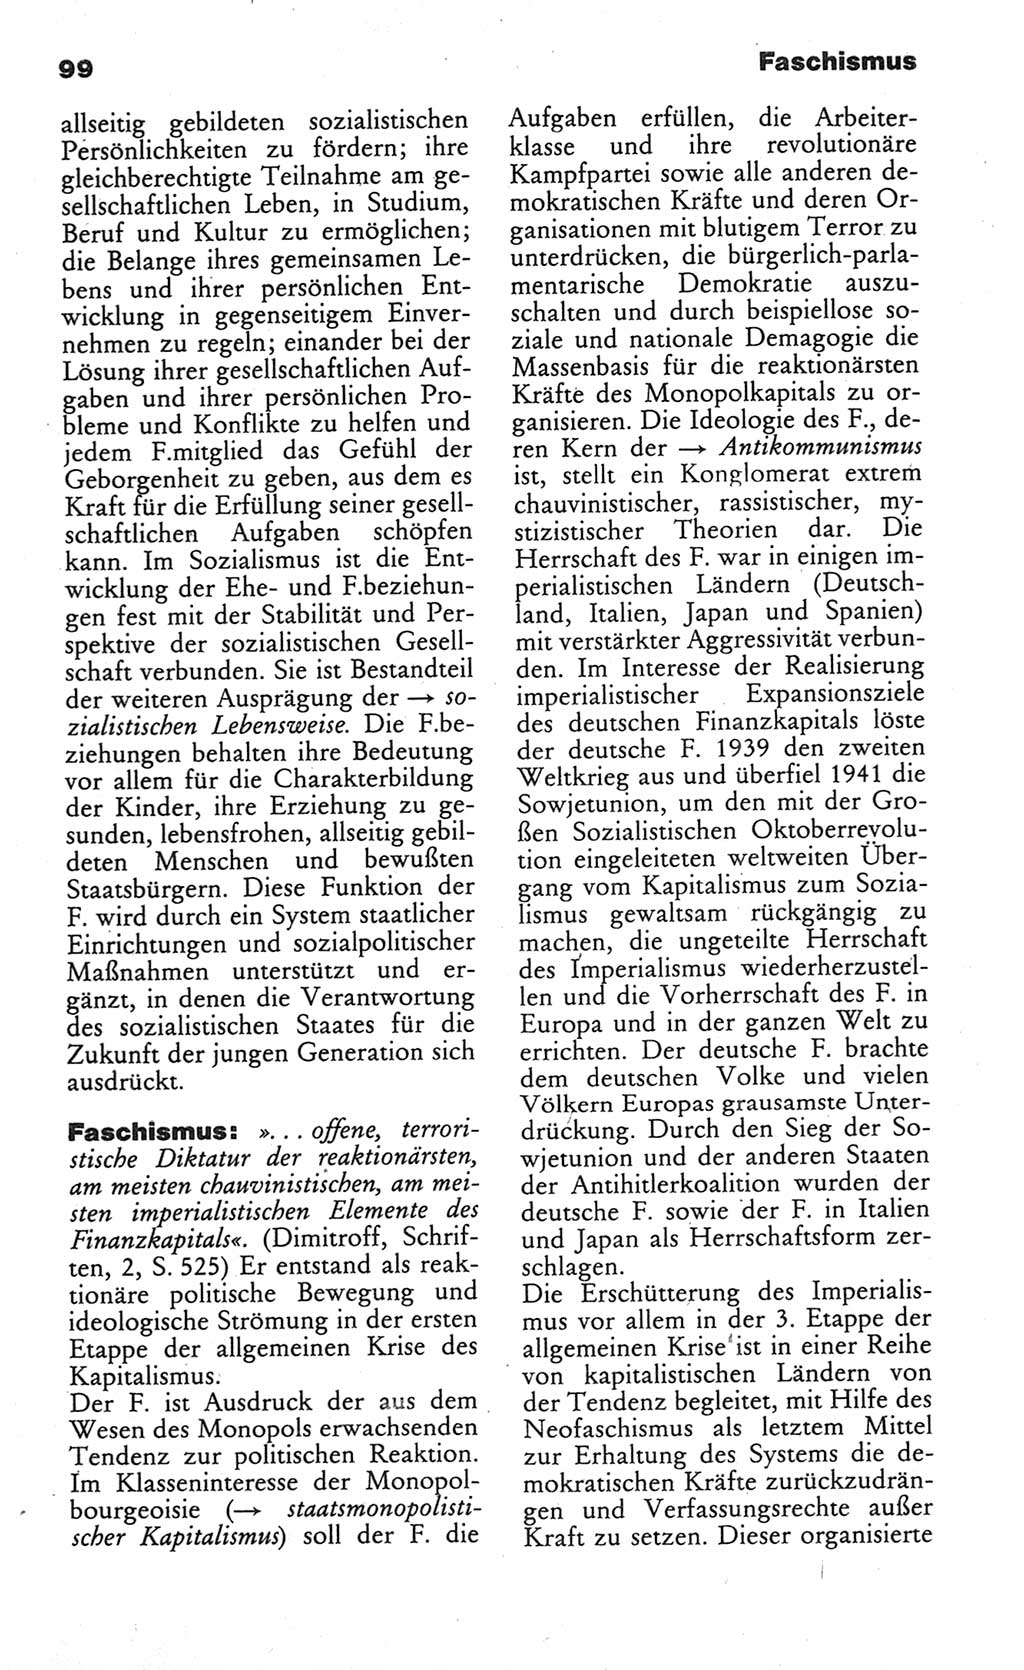 Wörterbuch des wissenschaftlichen Kommunismus [Deutsche Demokratische Republik (DDR)] 1984, Seite 99 (Wb. wiss. Komm. DDR 1984, S. 99)